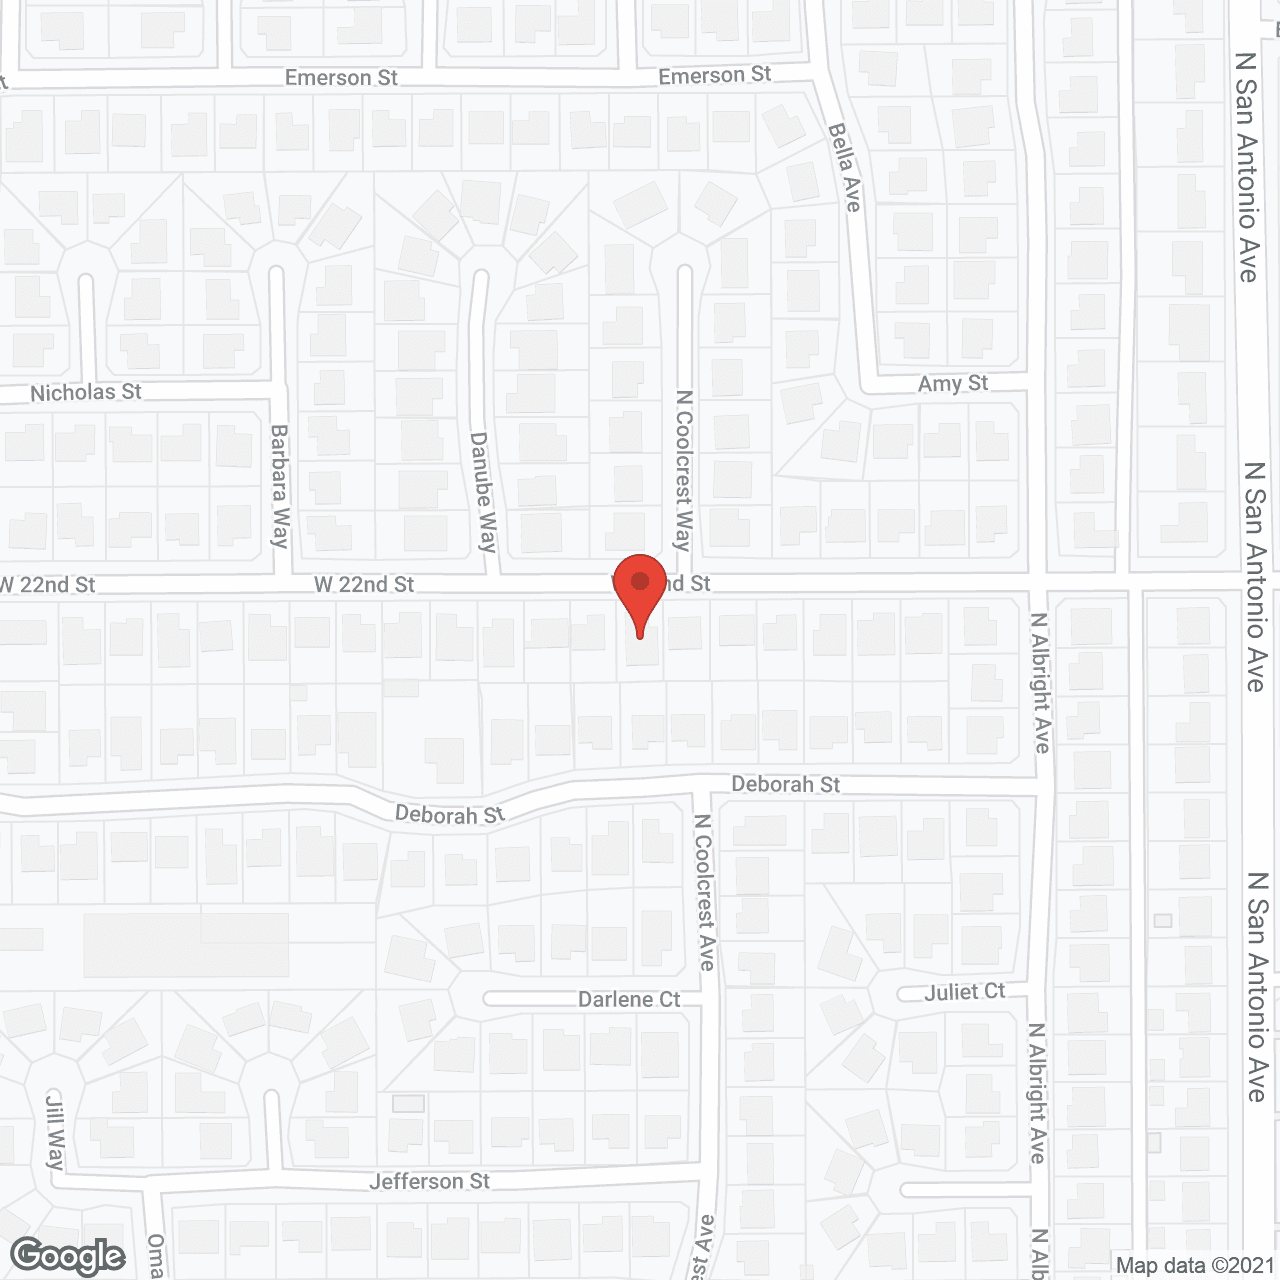 North San Antonio Senior Care II in google map